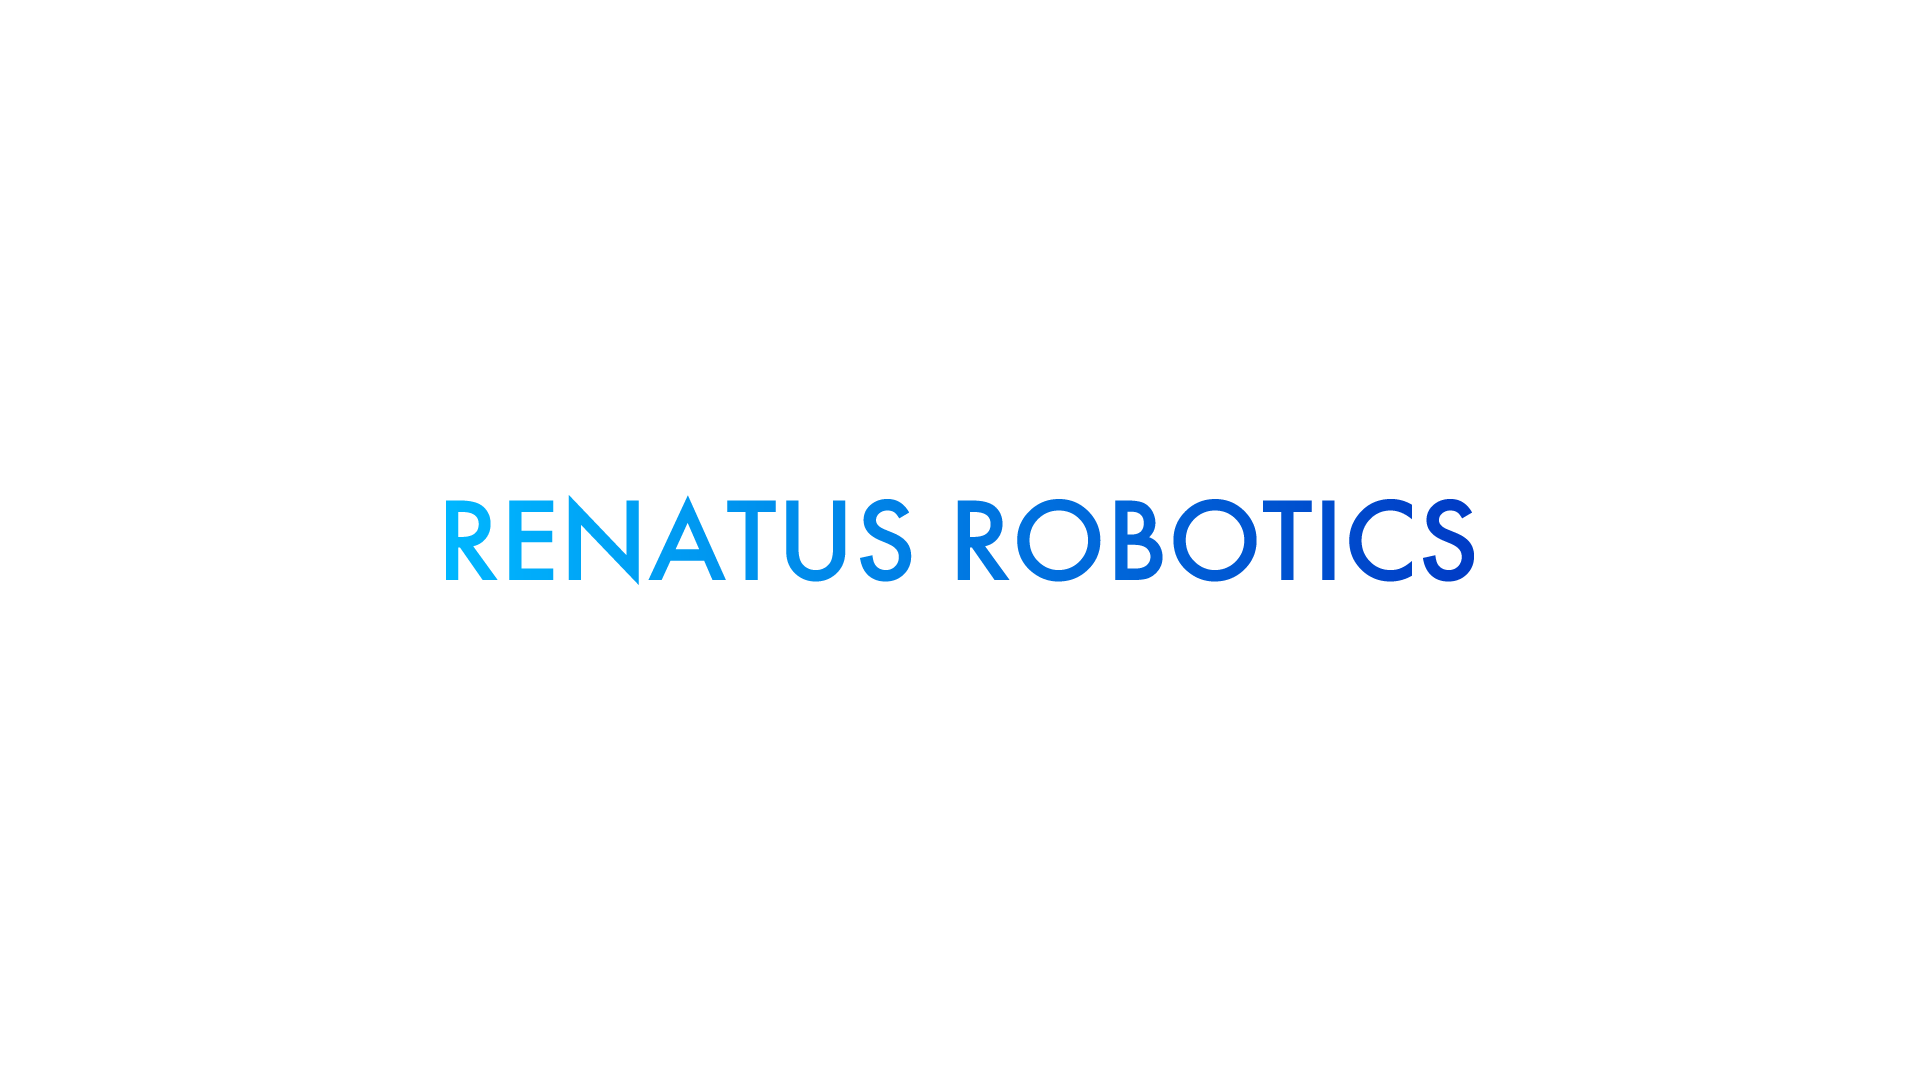 RENATUS ROBOTICS